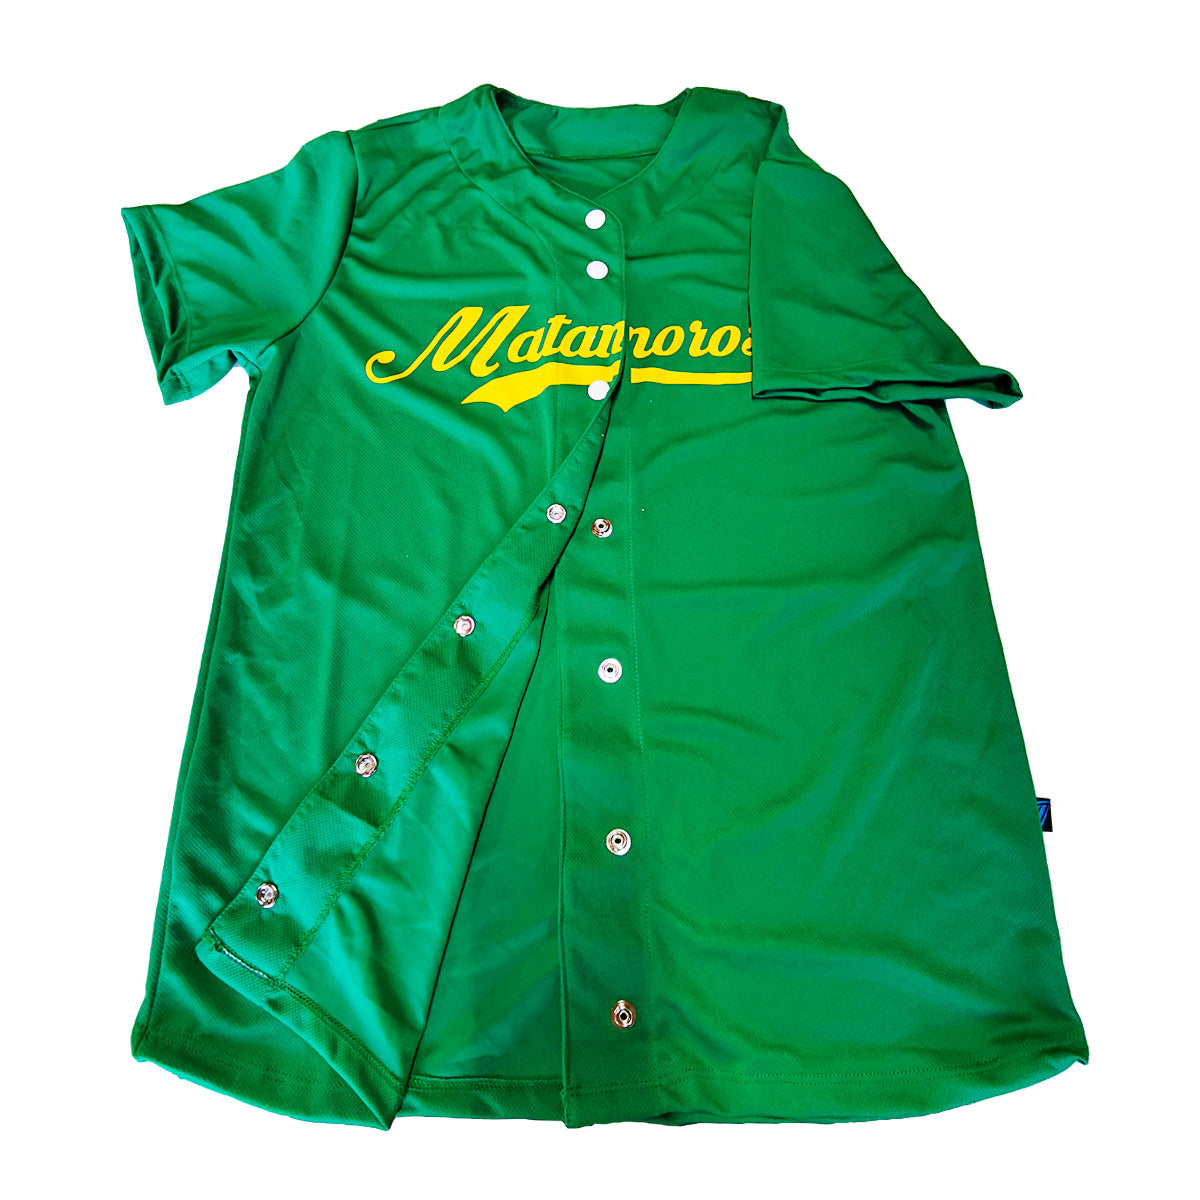 jersey beisbol softbol camisola personalizado dama verde en guadalajara